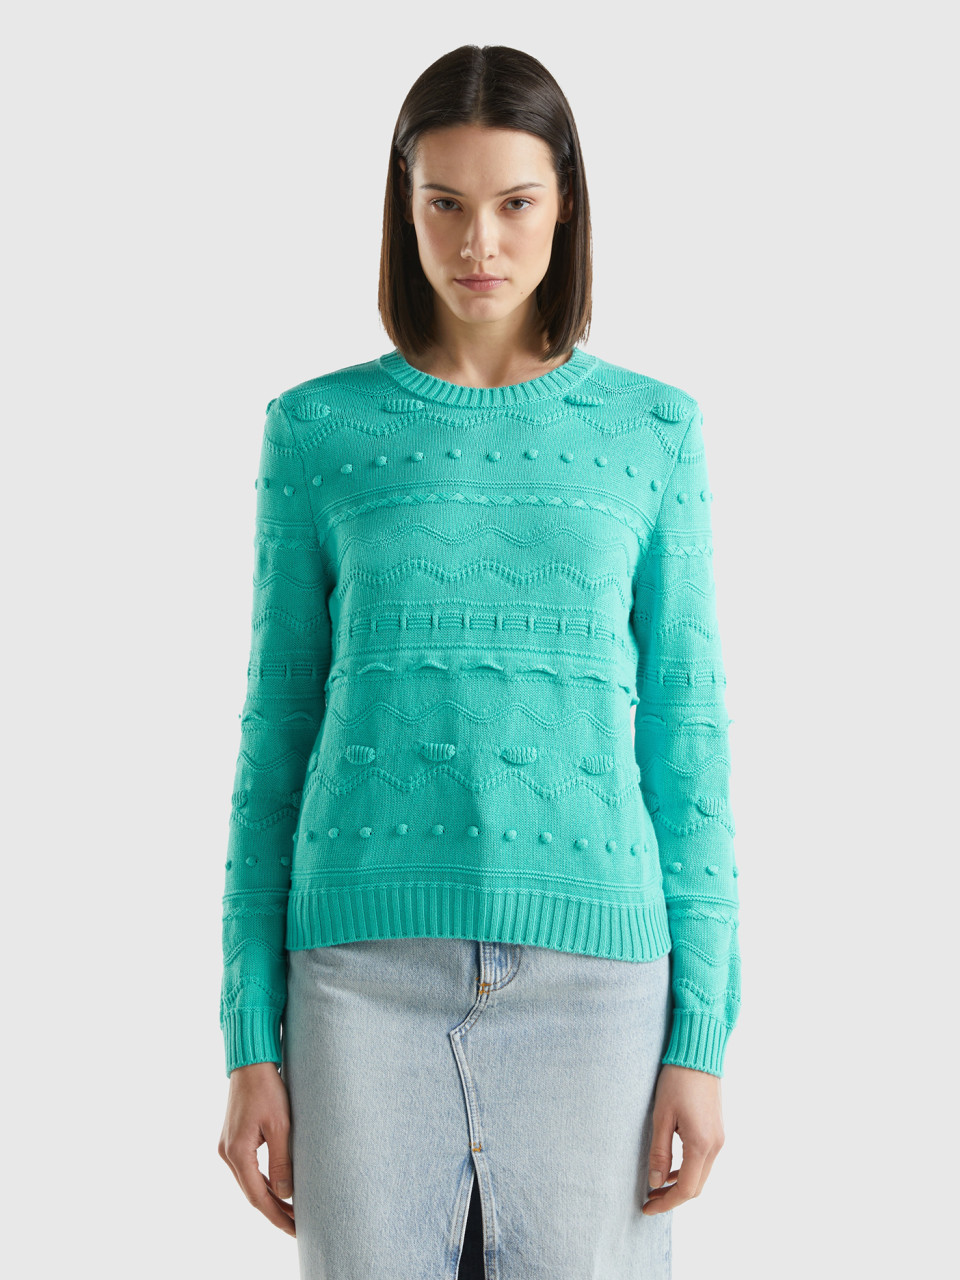 Benetton, Aqua Green Knitted Sweater, Aqua, Women